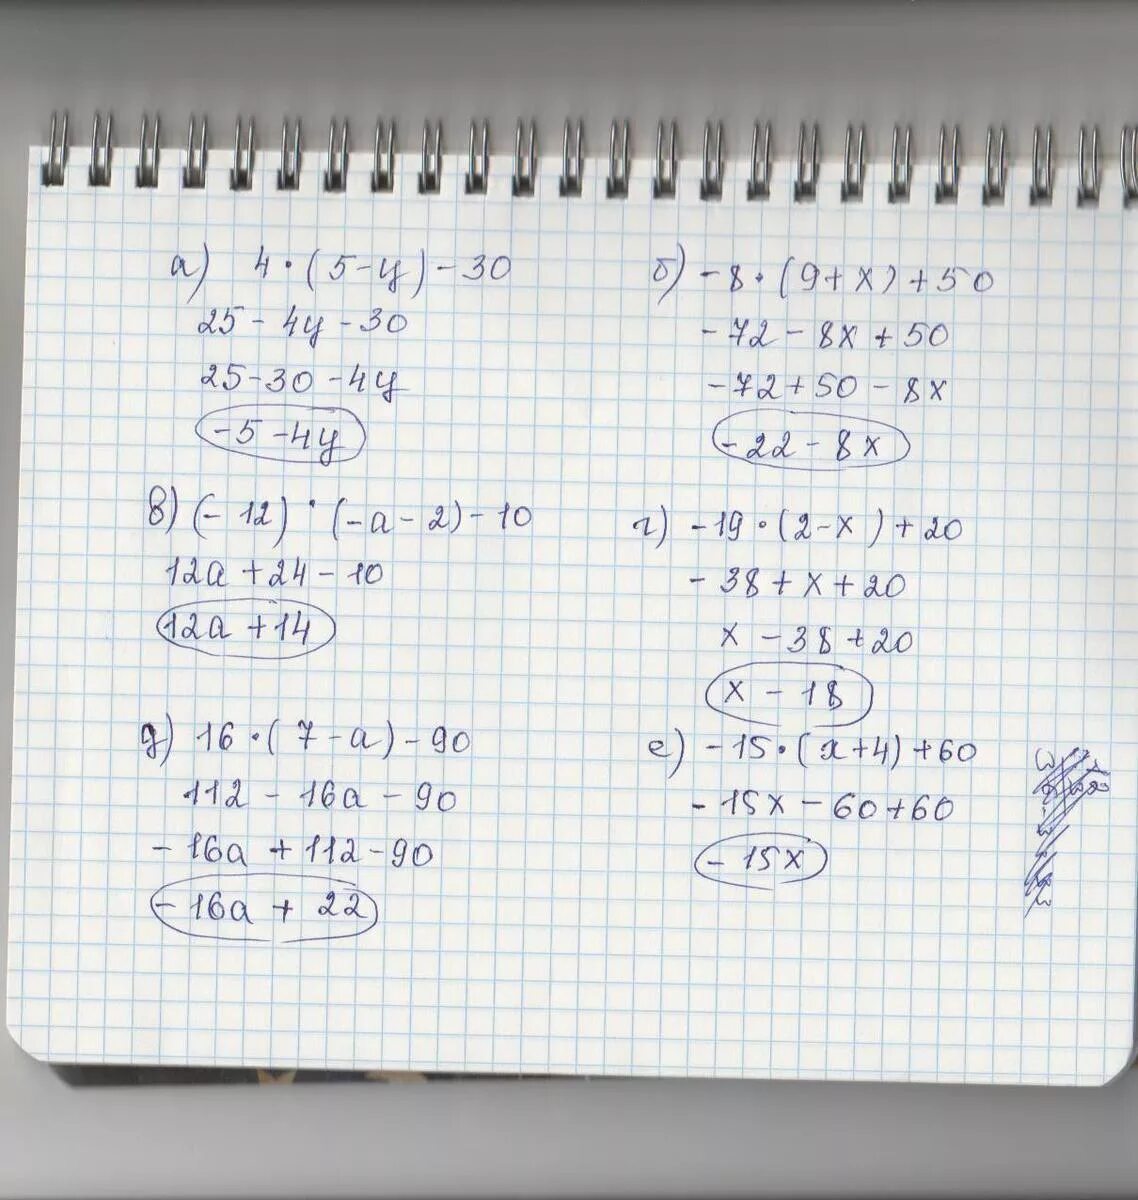 20-3(Х-5)<16-7х. 5/4-Х+5/Х=10/5. Решение 5х+12=60. 4нвк 60-12-19.